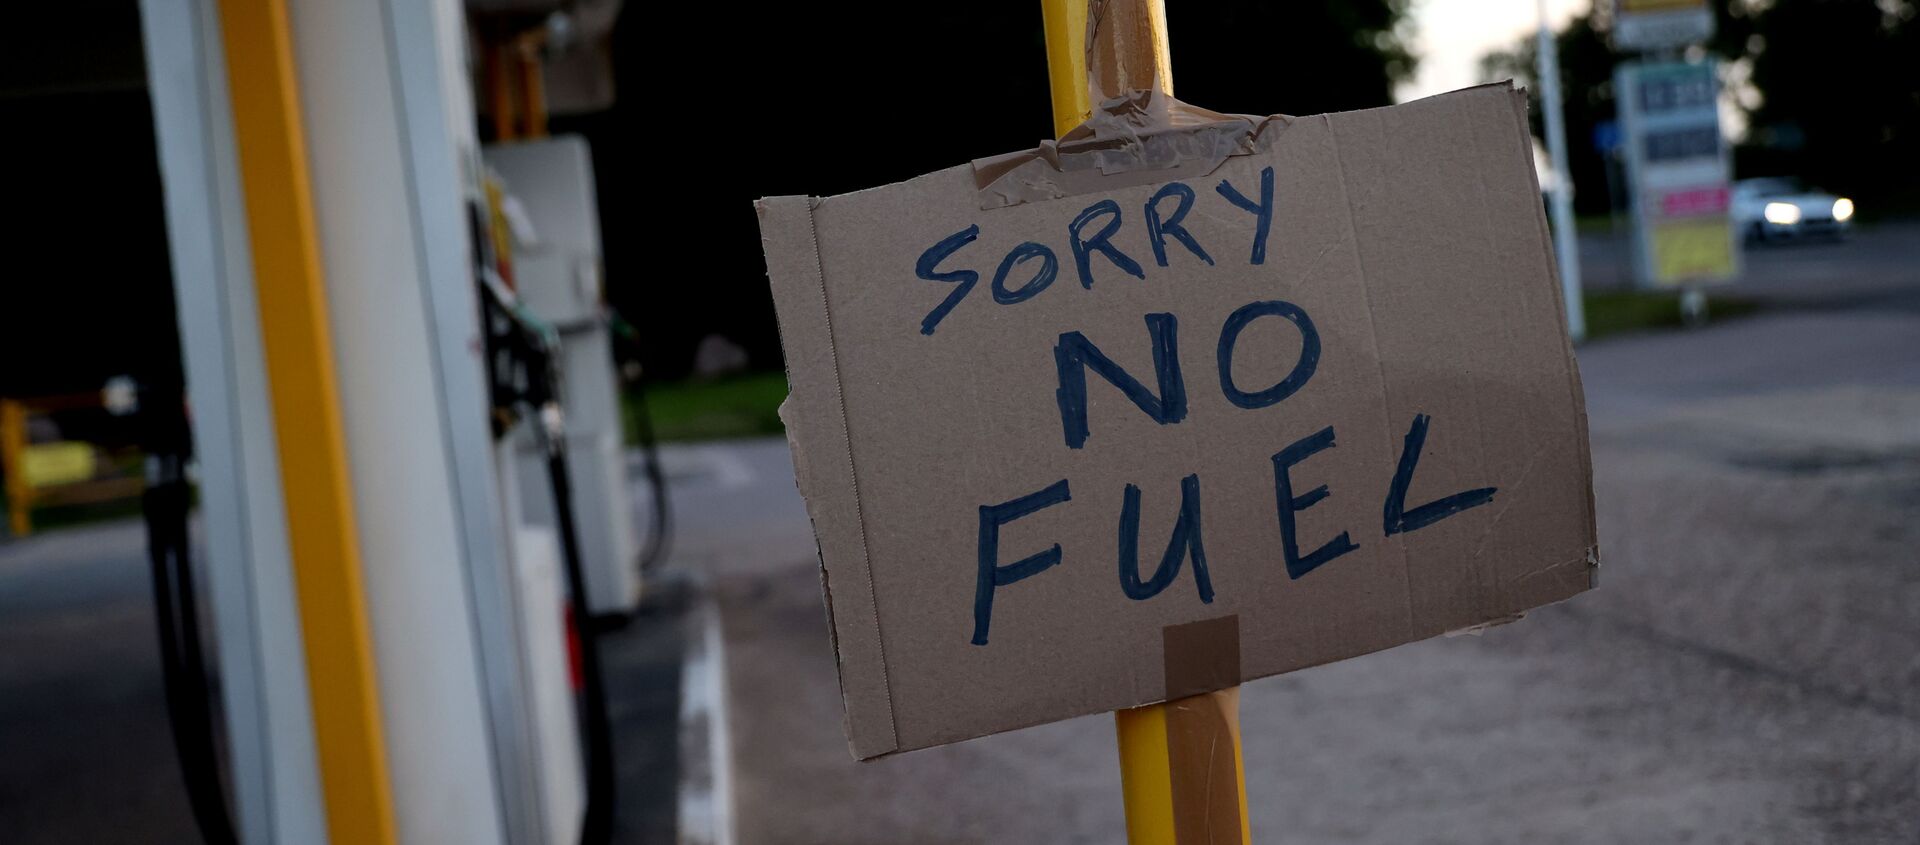 Знак, показывающий клиентам, что закончилось топливо, изображен на заправочной станции Hilltop Garage в Ротли, Лестершир, Великобритания, 25 сентября 2021 года. - Sputnik Абхазия, 1920, 28.09.2021